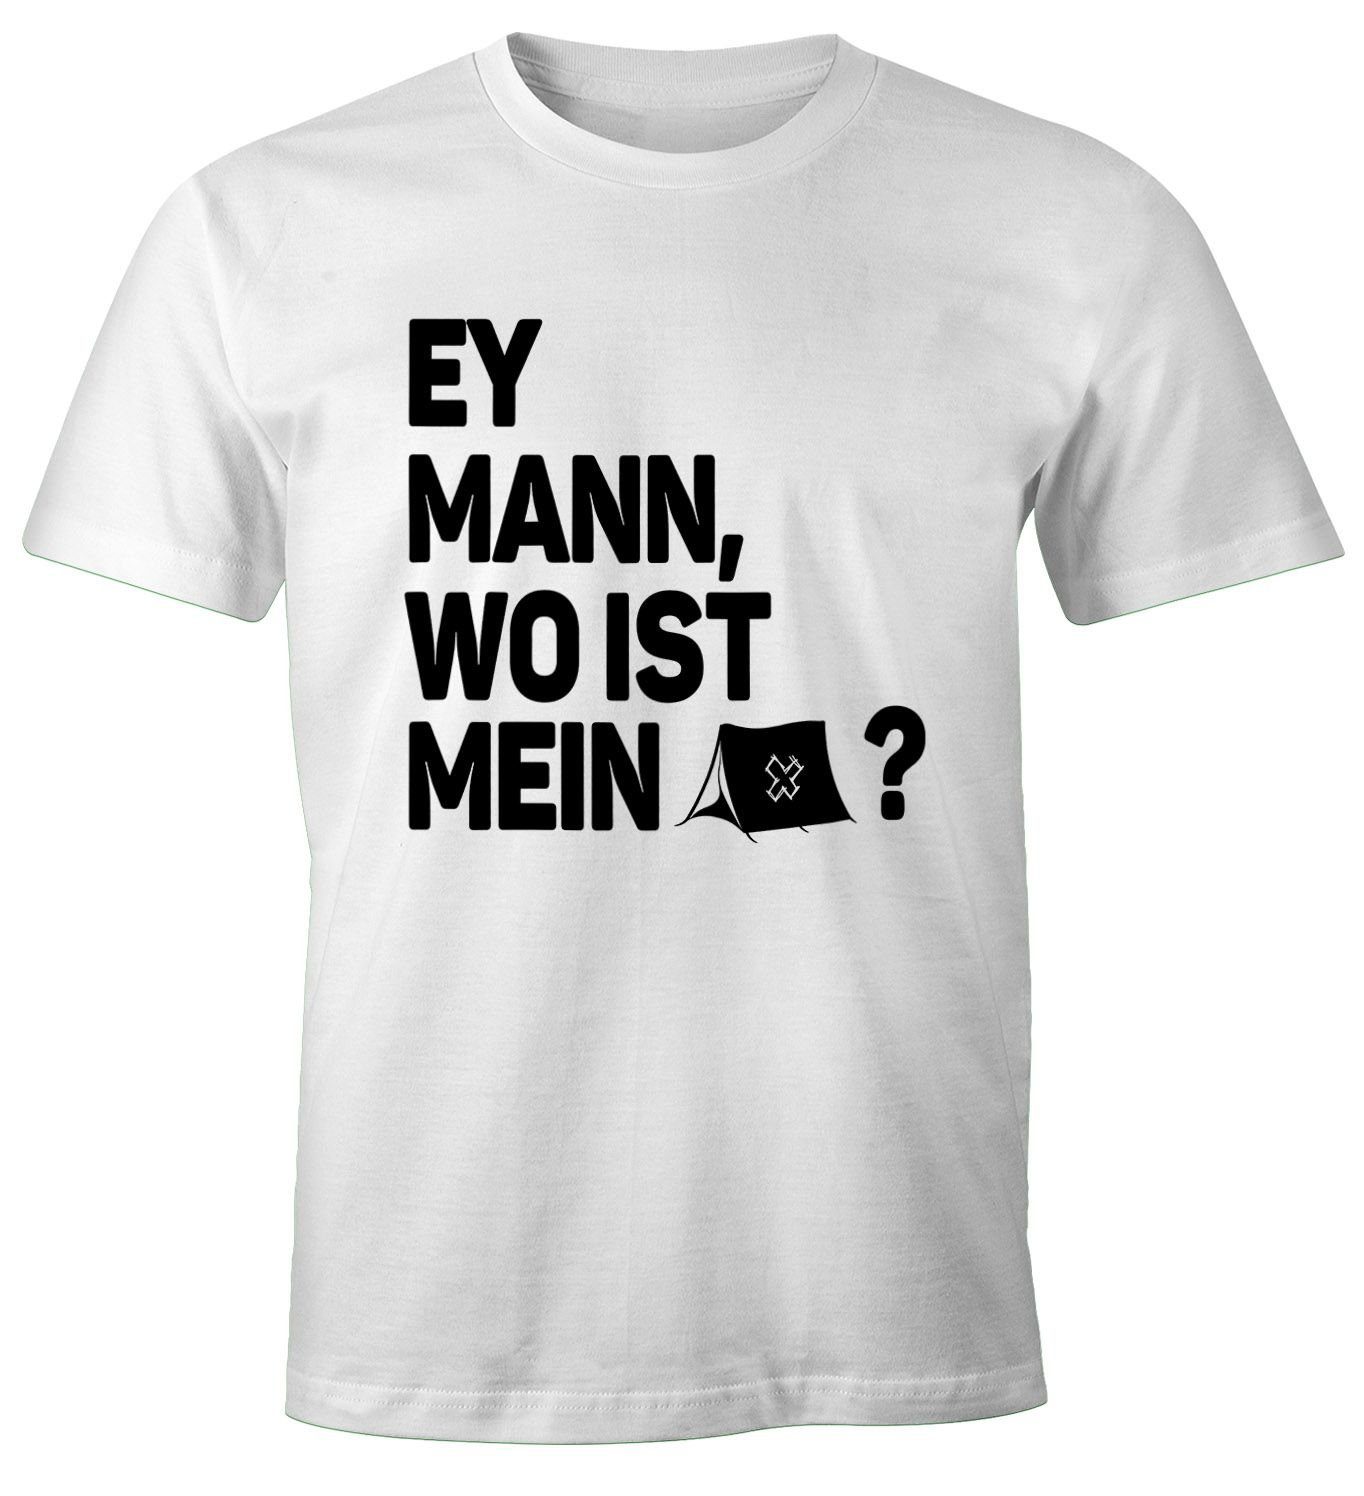 MoonWorks Print-Shirt Herren T-Shirt Spruch Ey Mann, wo ist mein Zelt? Fun-Shirt Party Festival Techno Rave Oberteil Moonworks® mit Print weiß